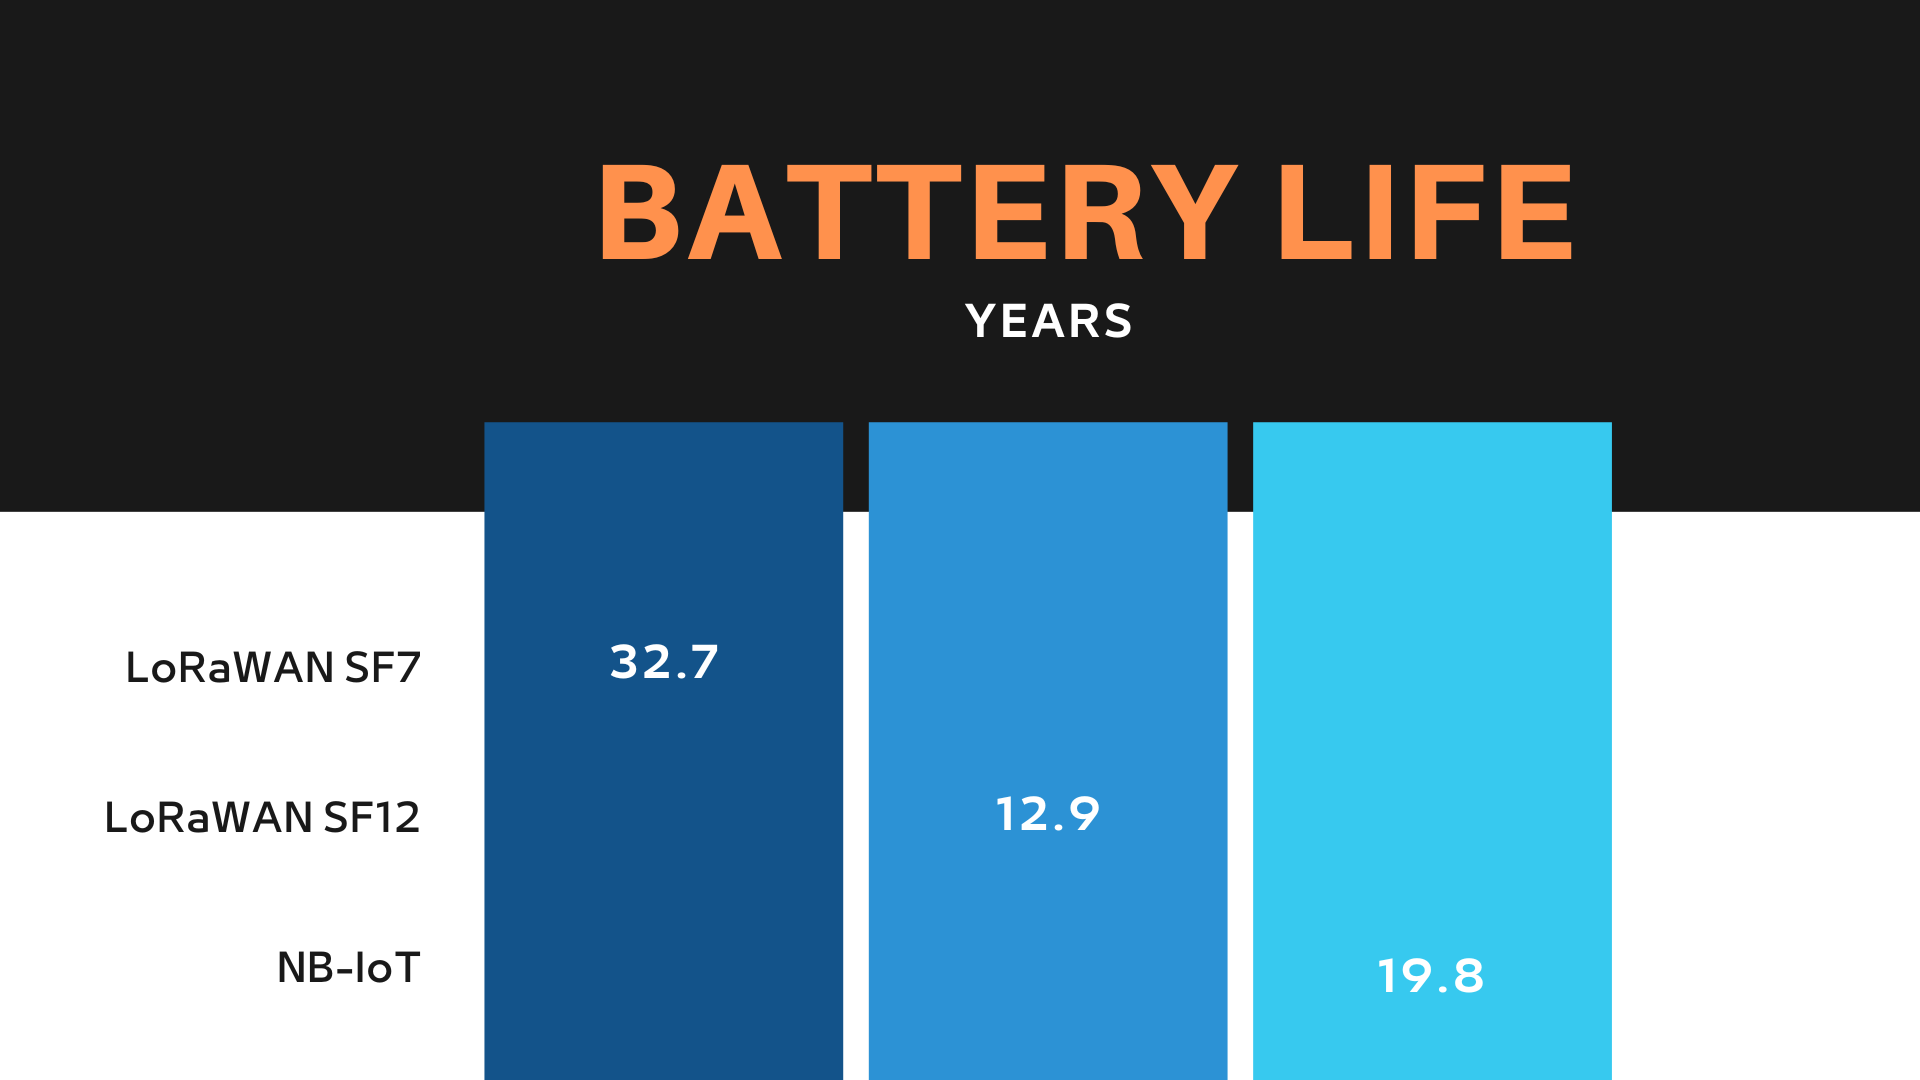 LoRaWAN vs NB-IoT battery life